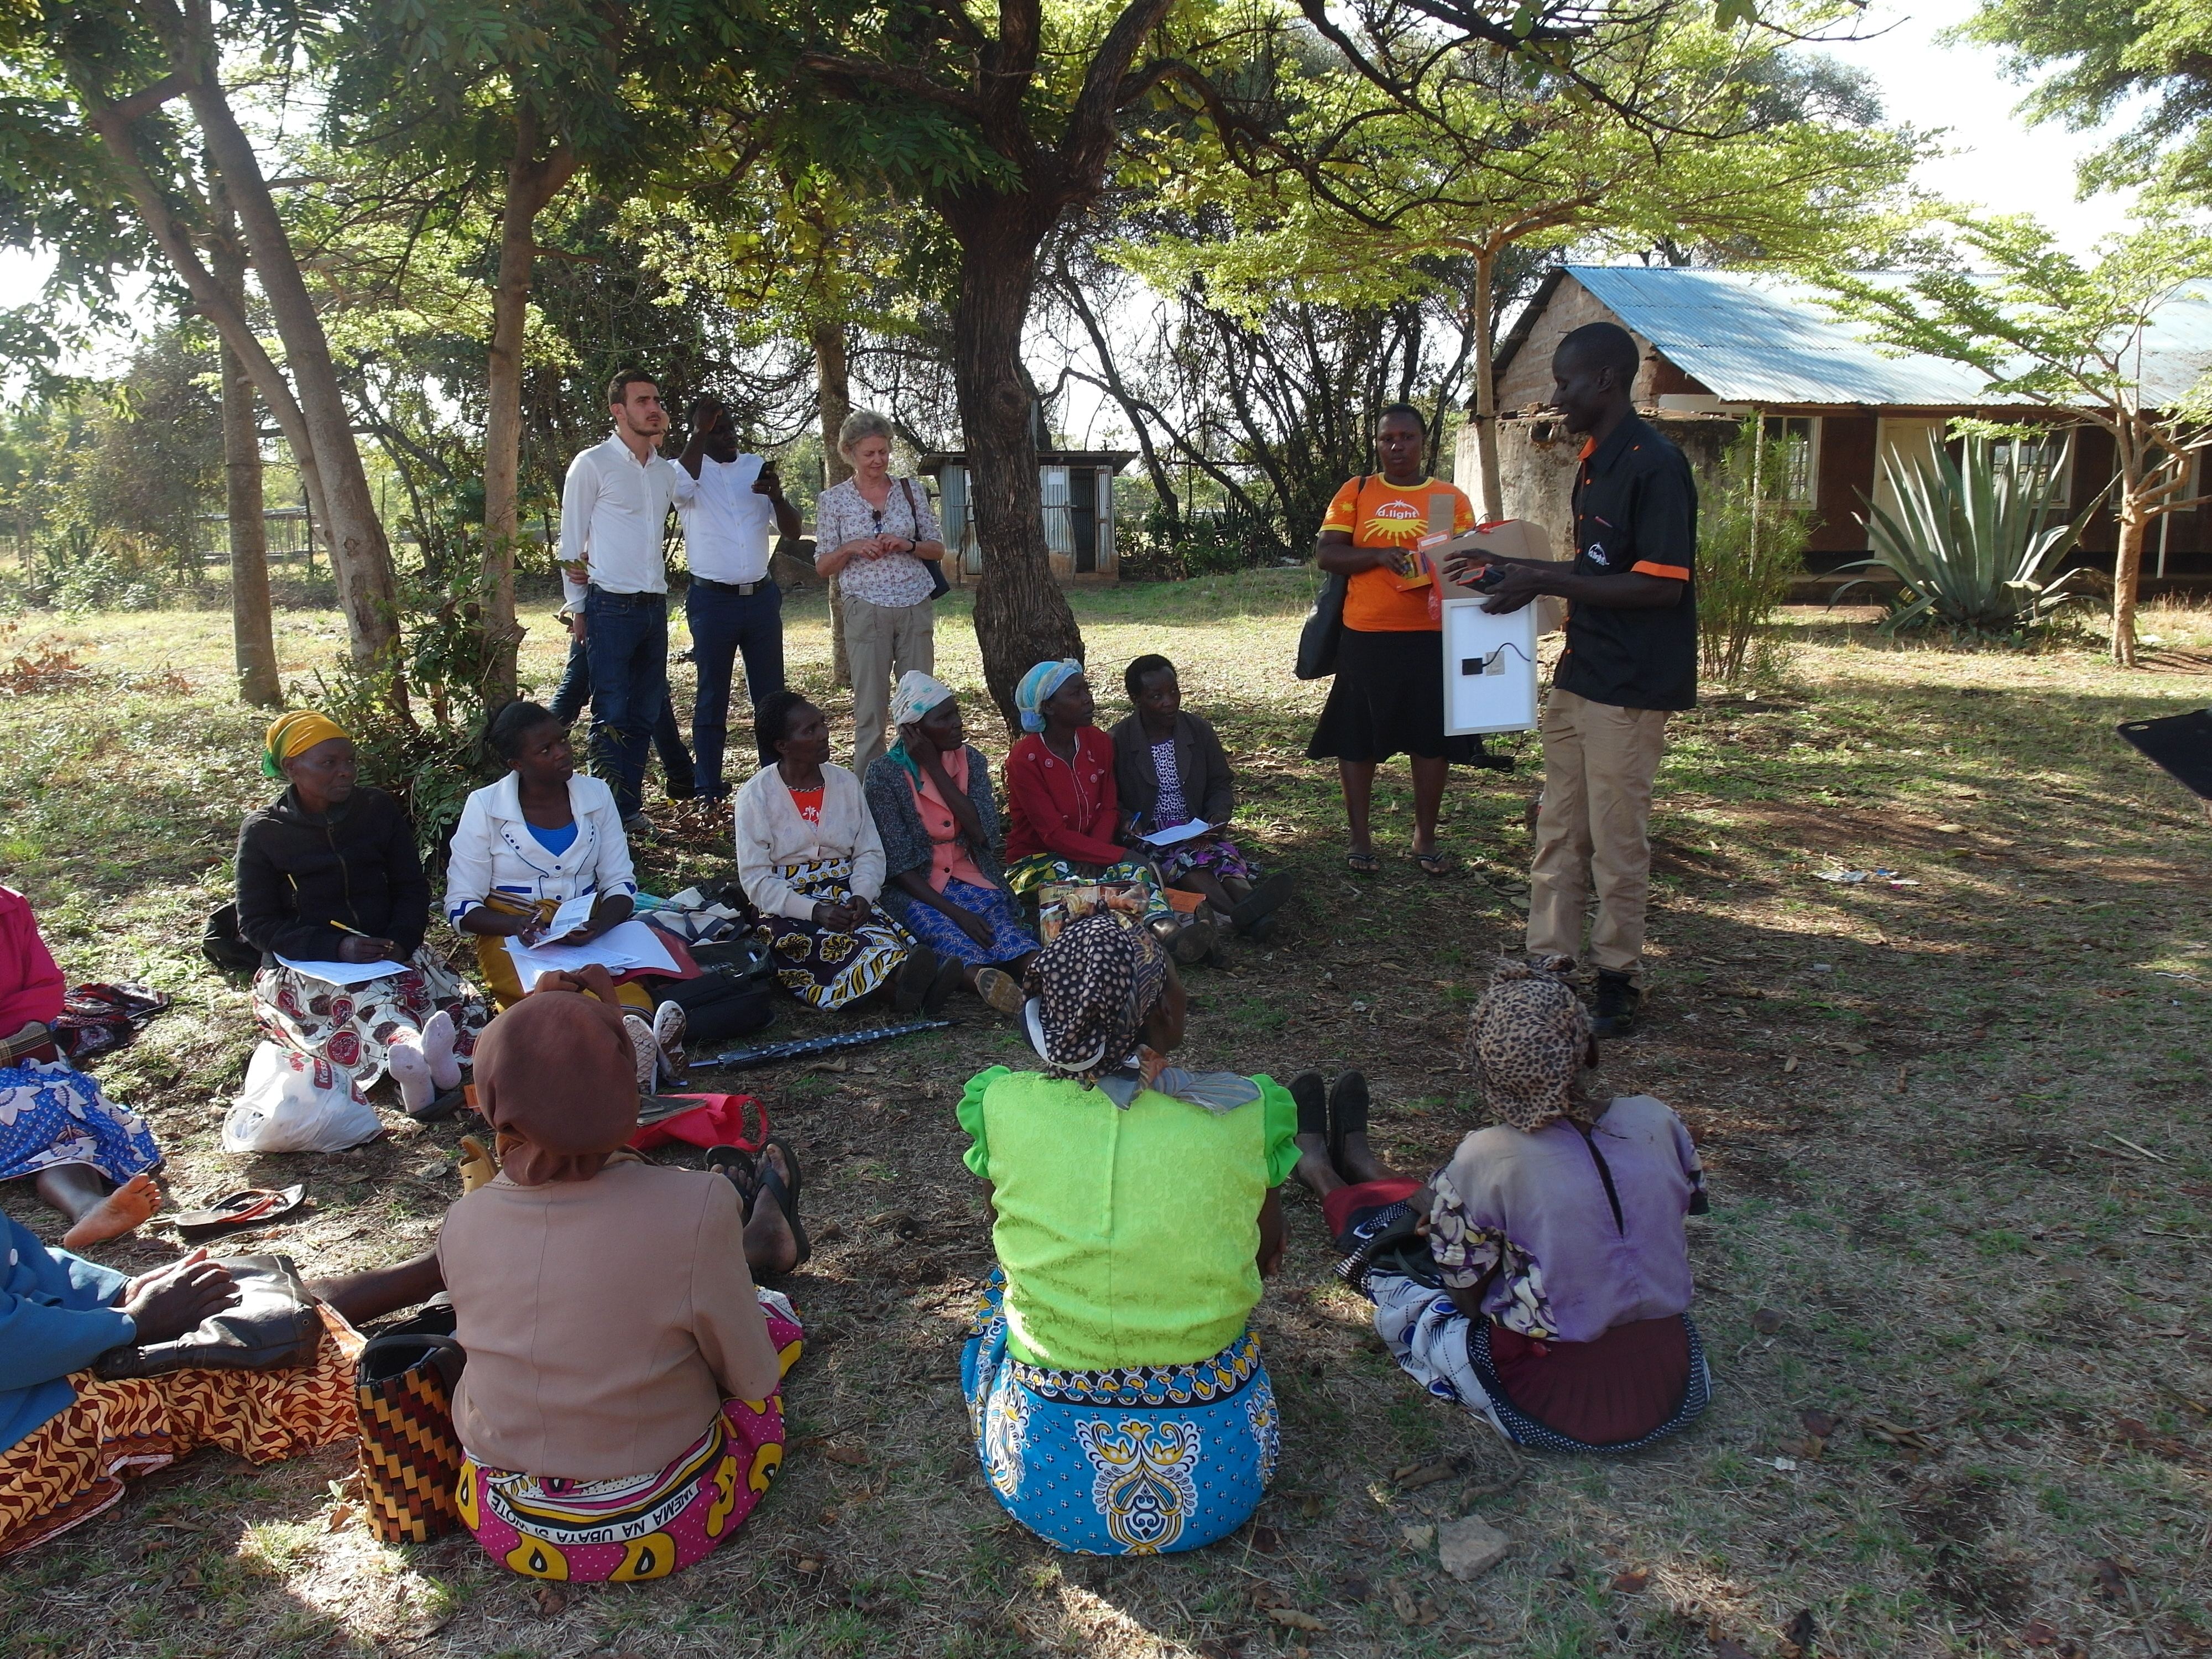 Vertreter von d.light erklären, wie sie Dörfern in Afrika helfen können. 